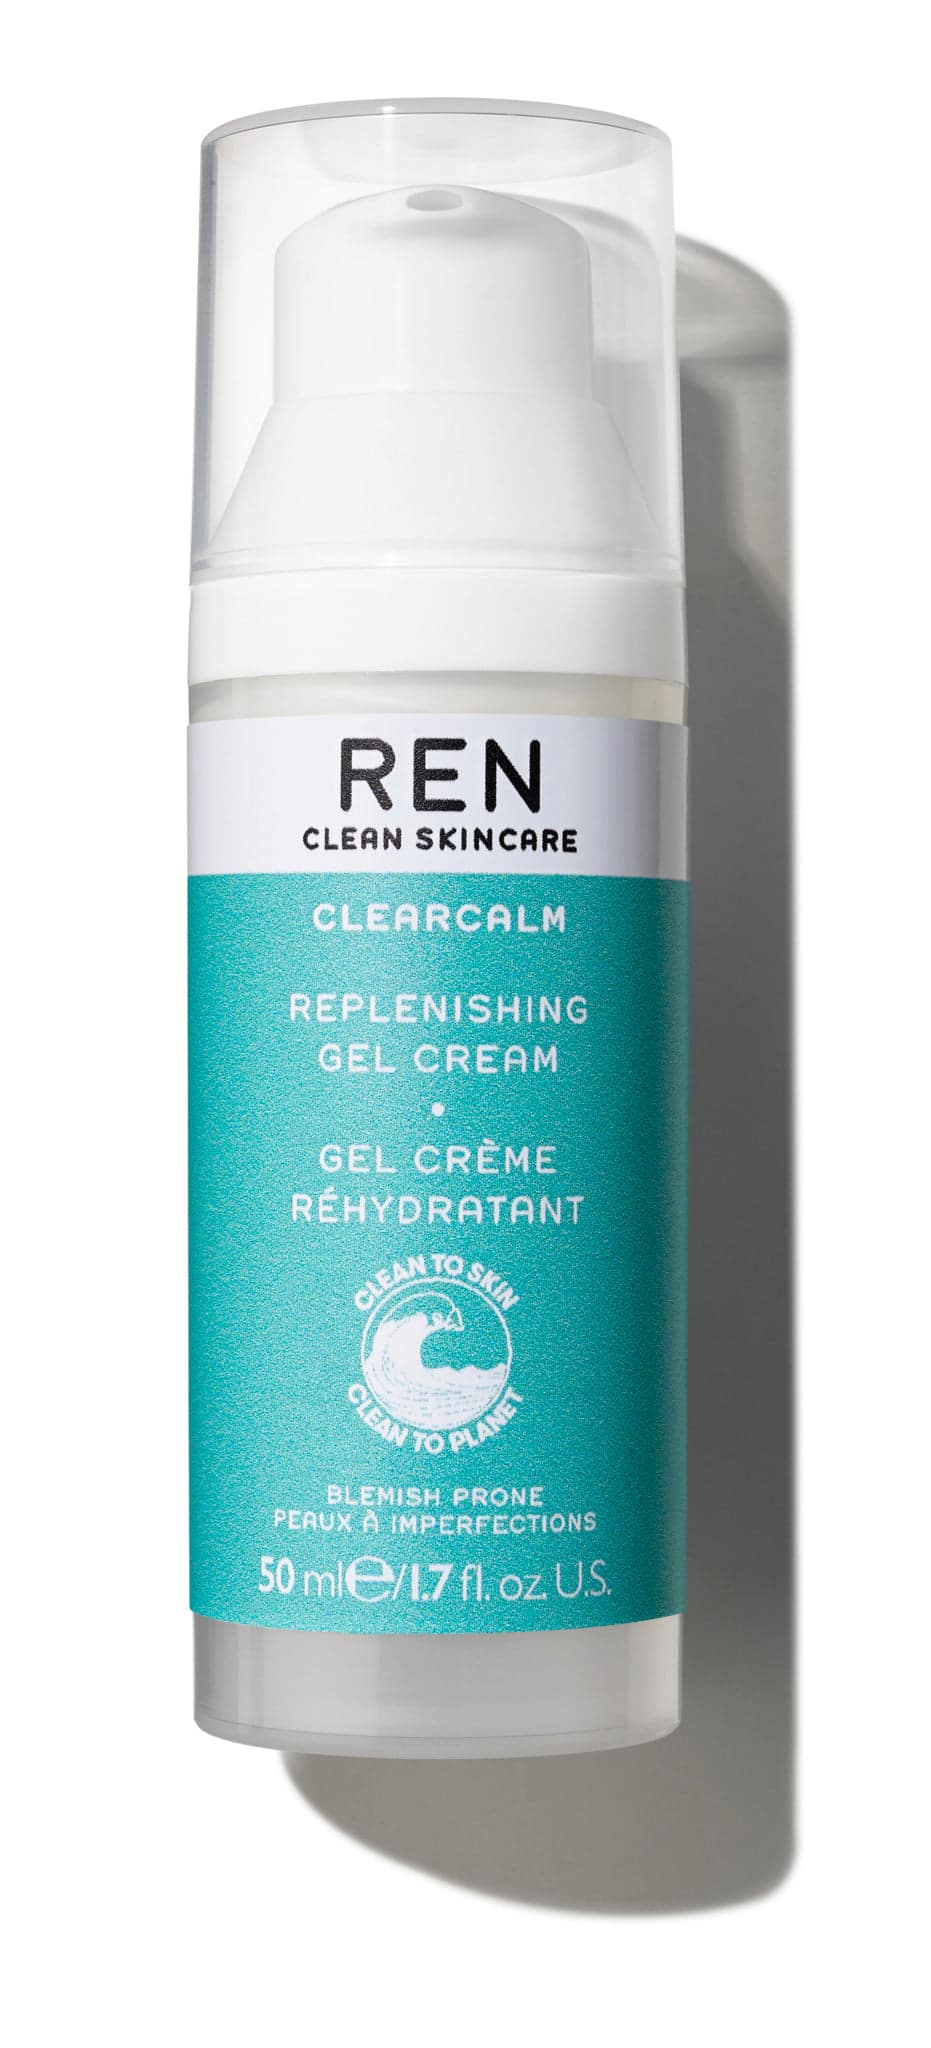 Clearcalm Replenishing Gel Cream - Ren - Huidproducten.nl